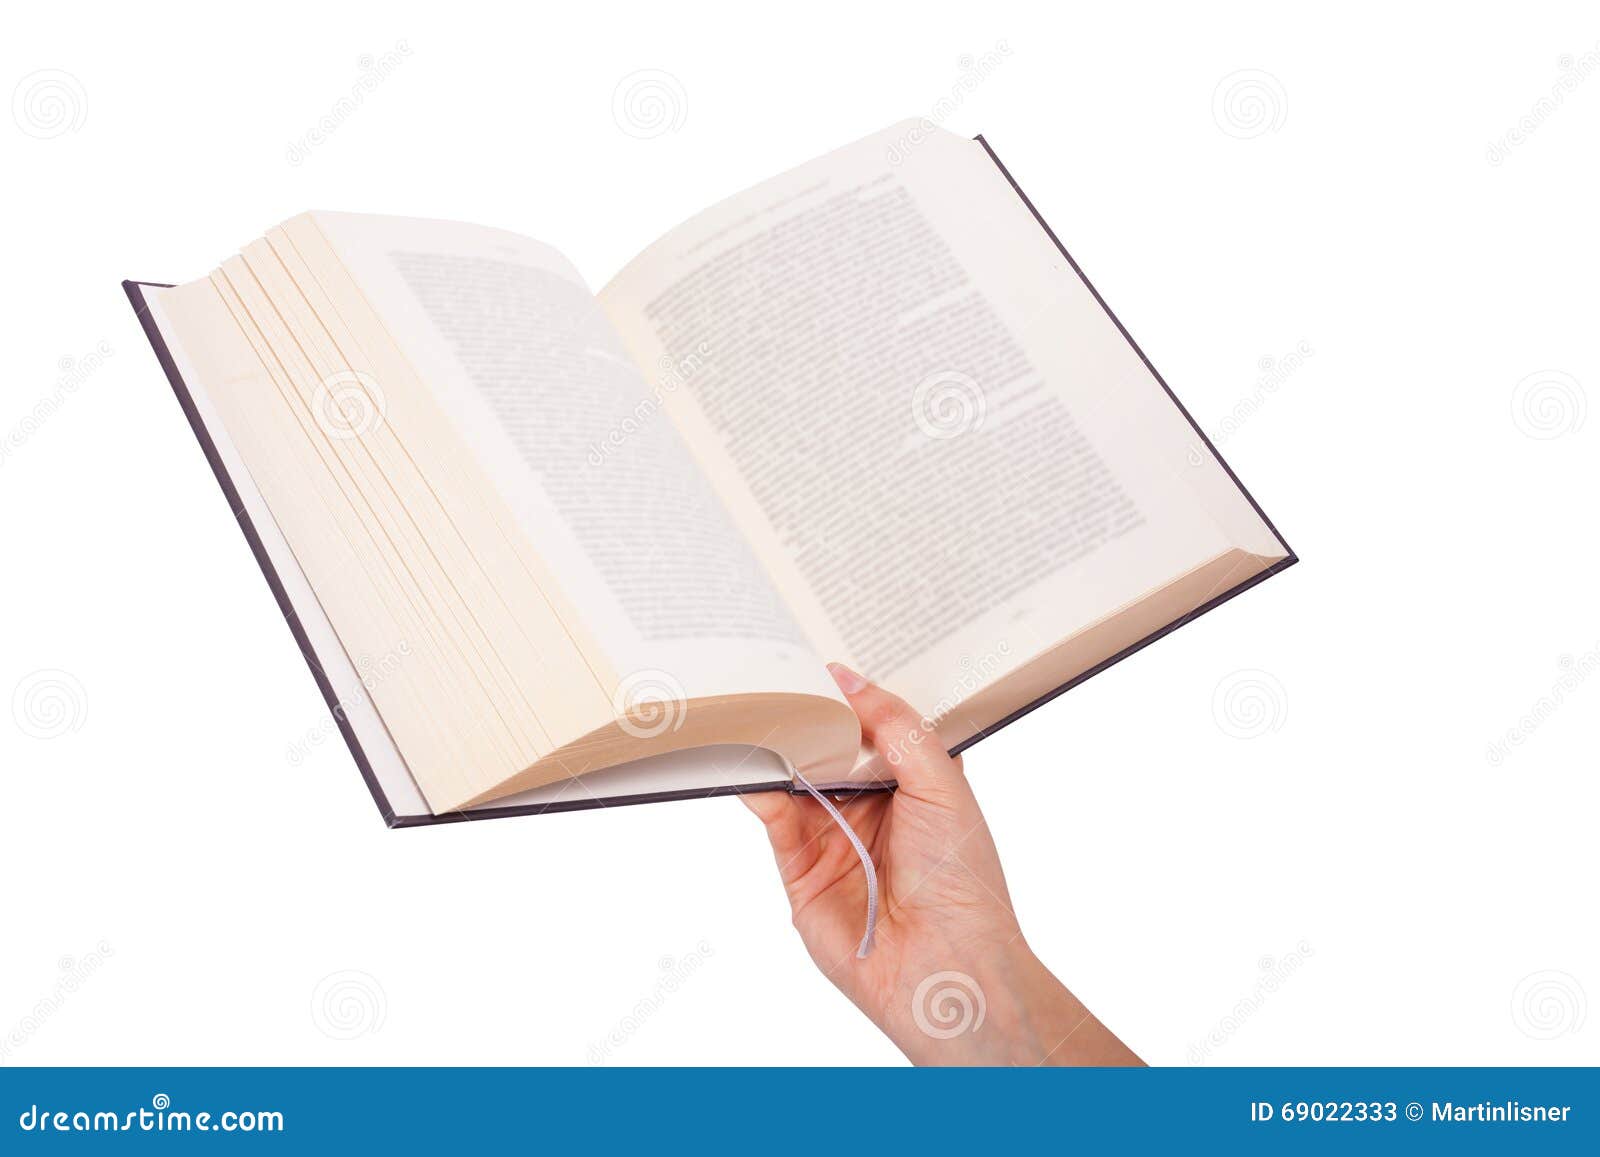 Держать открытую книгу. Книжка в руках. Держит книгу. Рука с открытой книгой. Рука держит книгу.